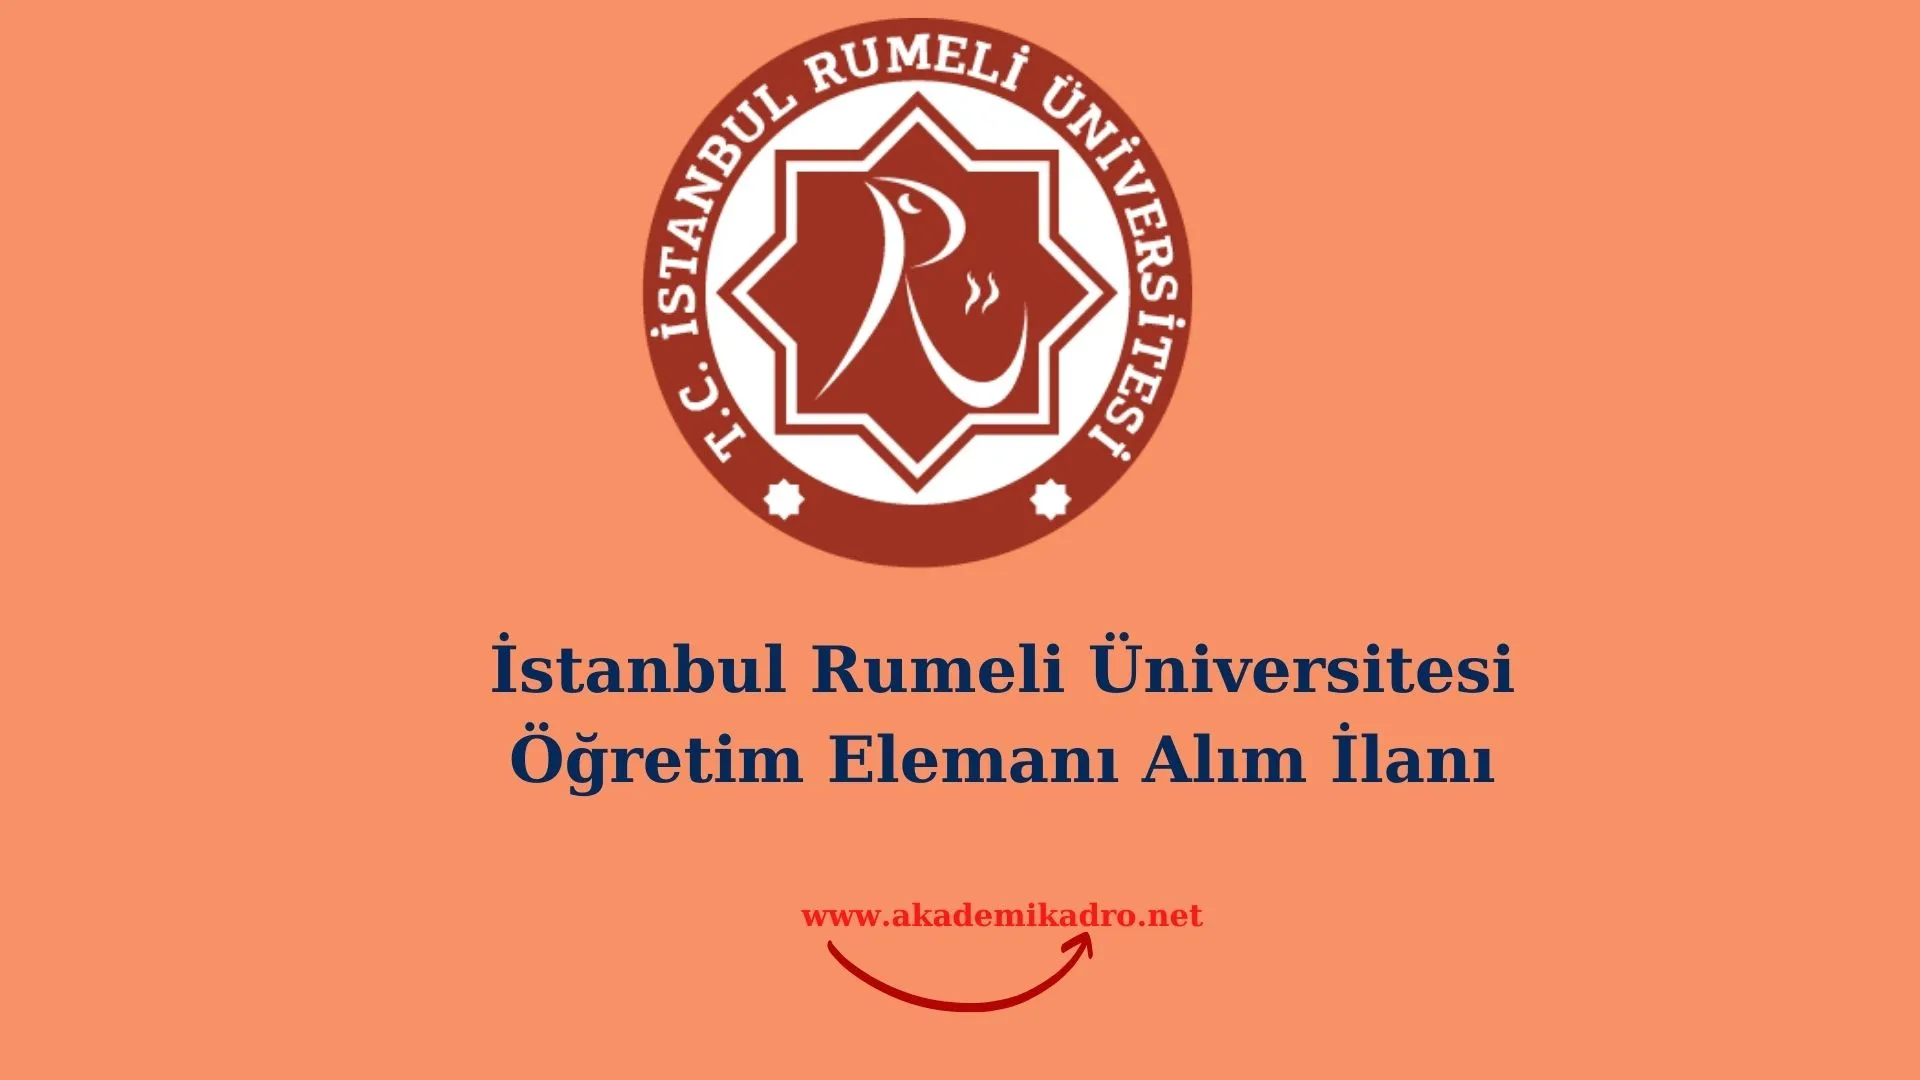 İstanbul Rumeli Üniversitesi 2 Araştırma görevlisi ve 2 Öğretim üyesi alacaktır.